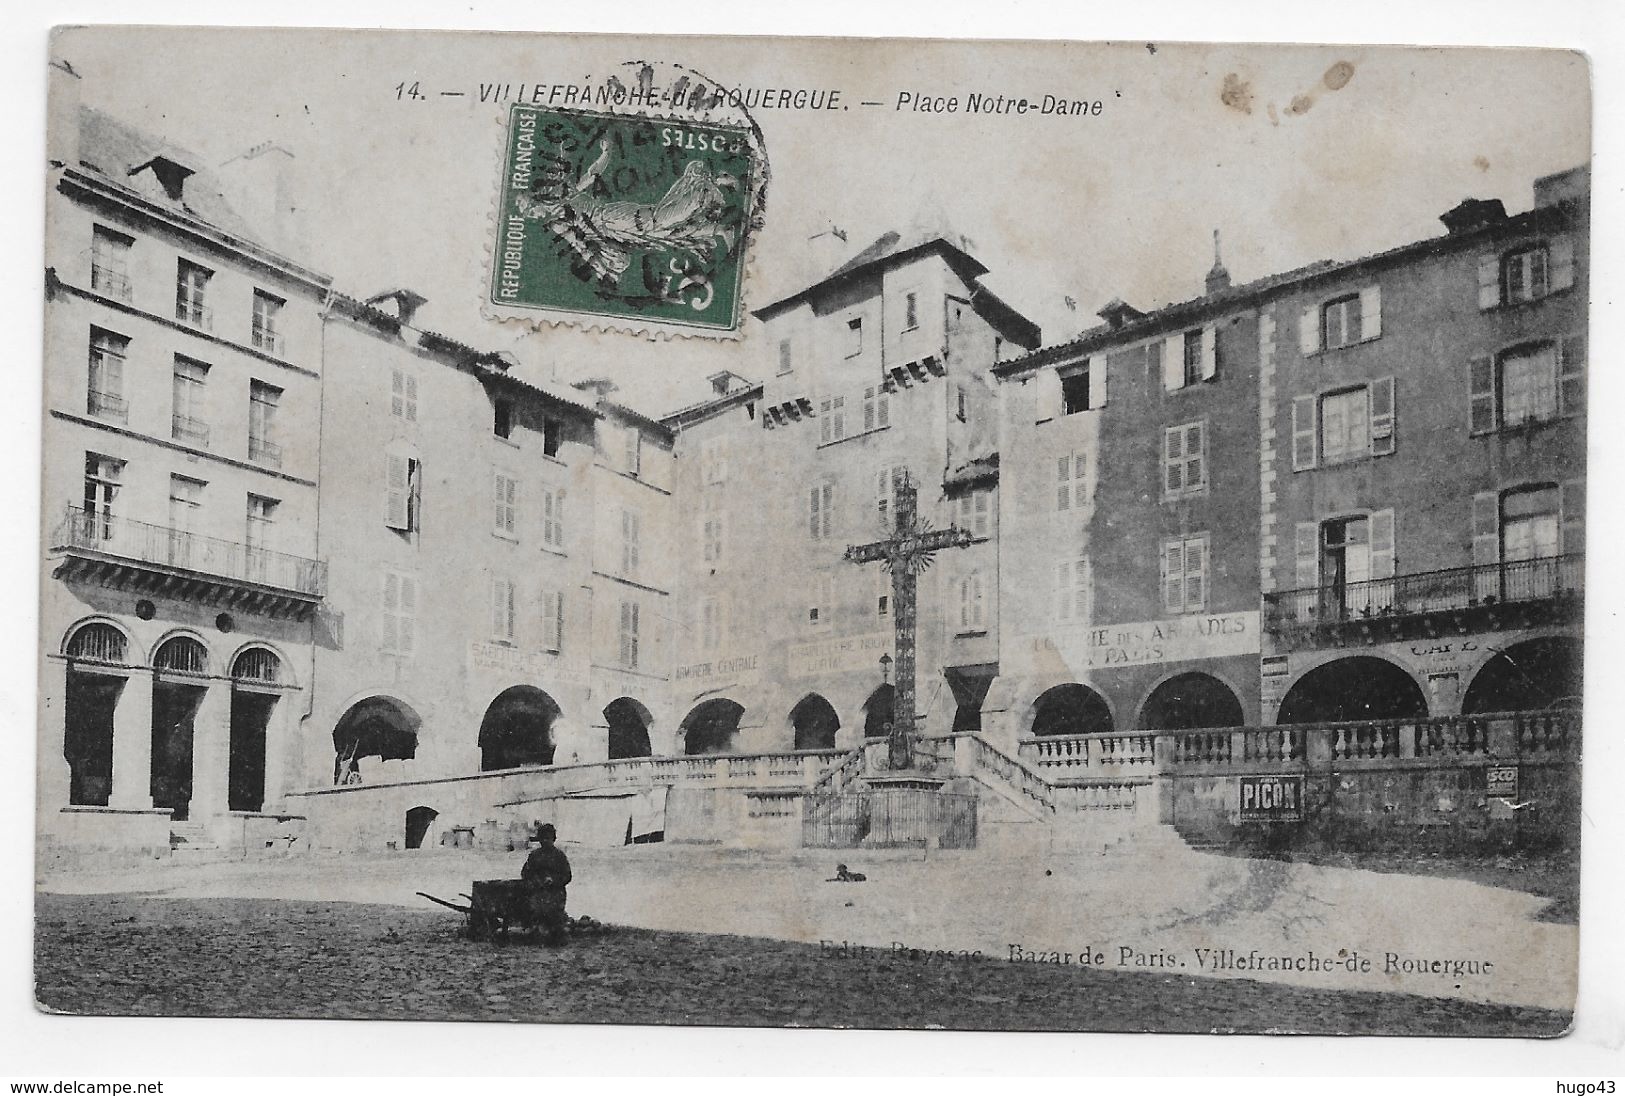 VILLEFRANCHE DE ROUERGUE EN 1911 - N° 14 - PLACE NOTRE DAME - CPA VOYAGEE - Villefranche De Rouergue